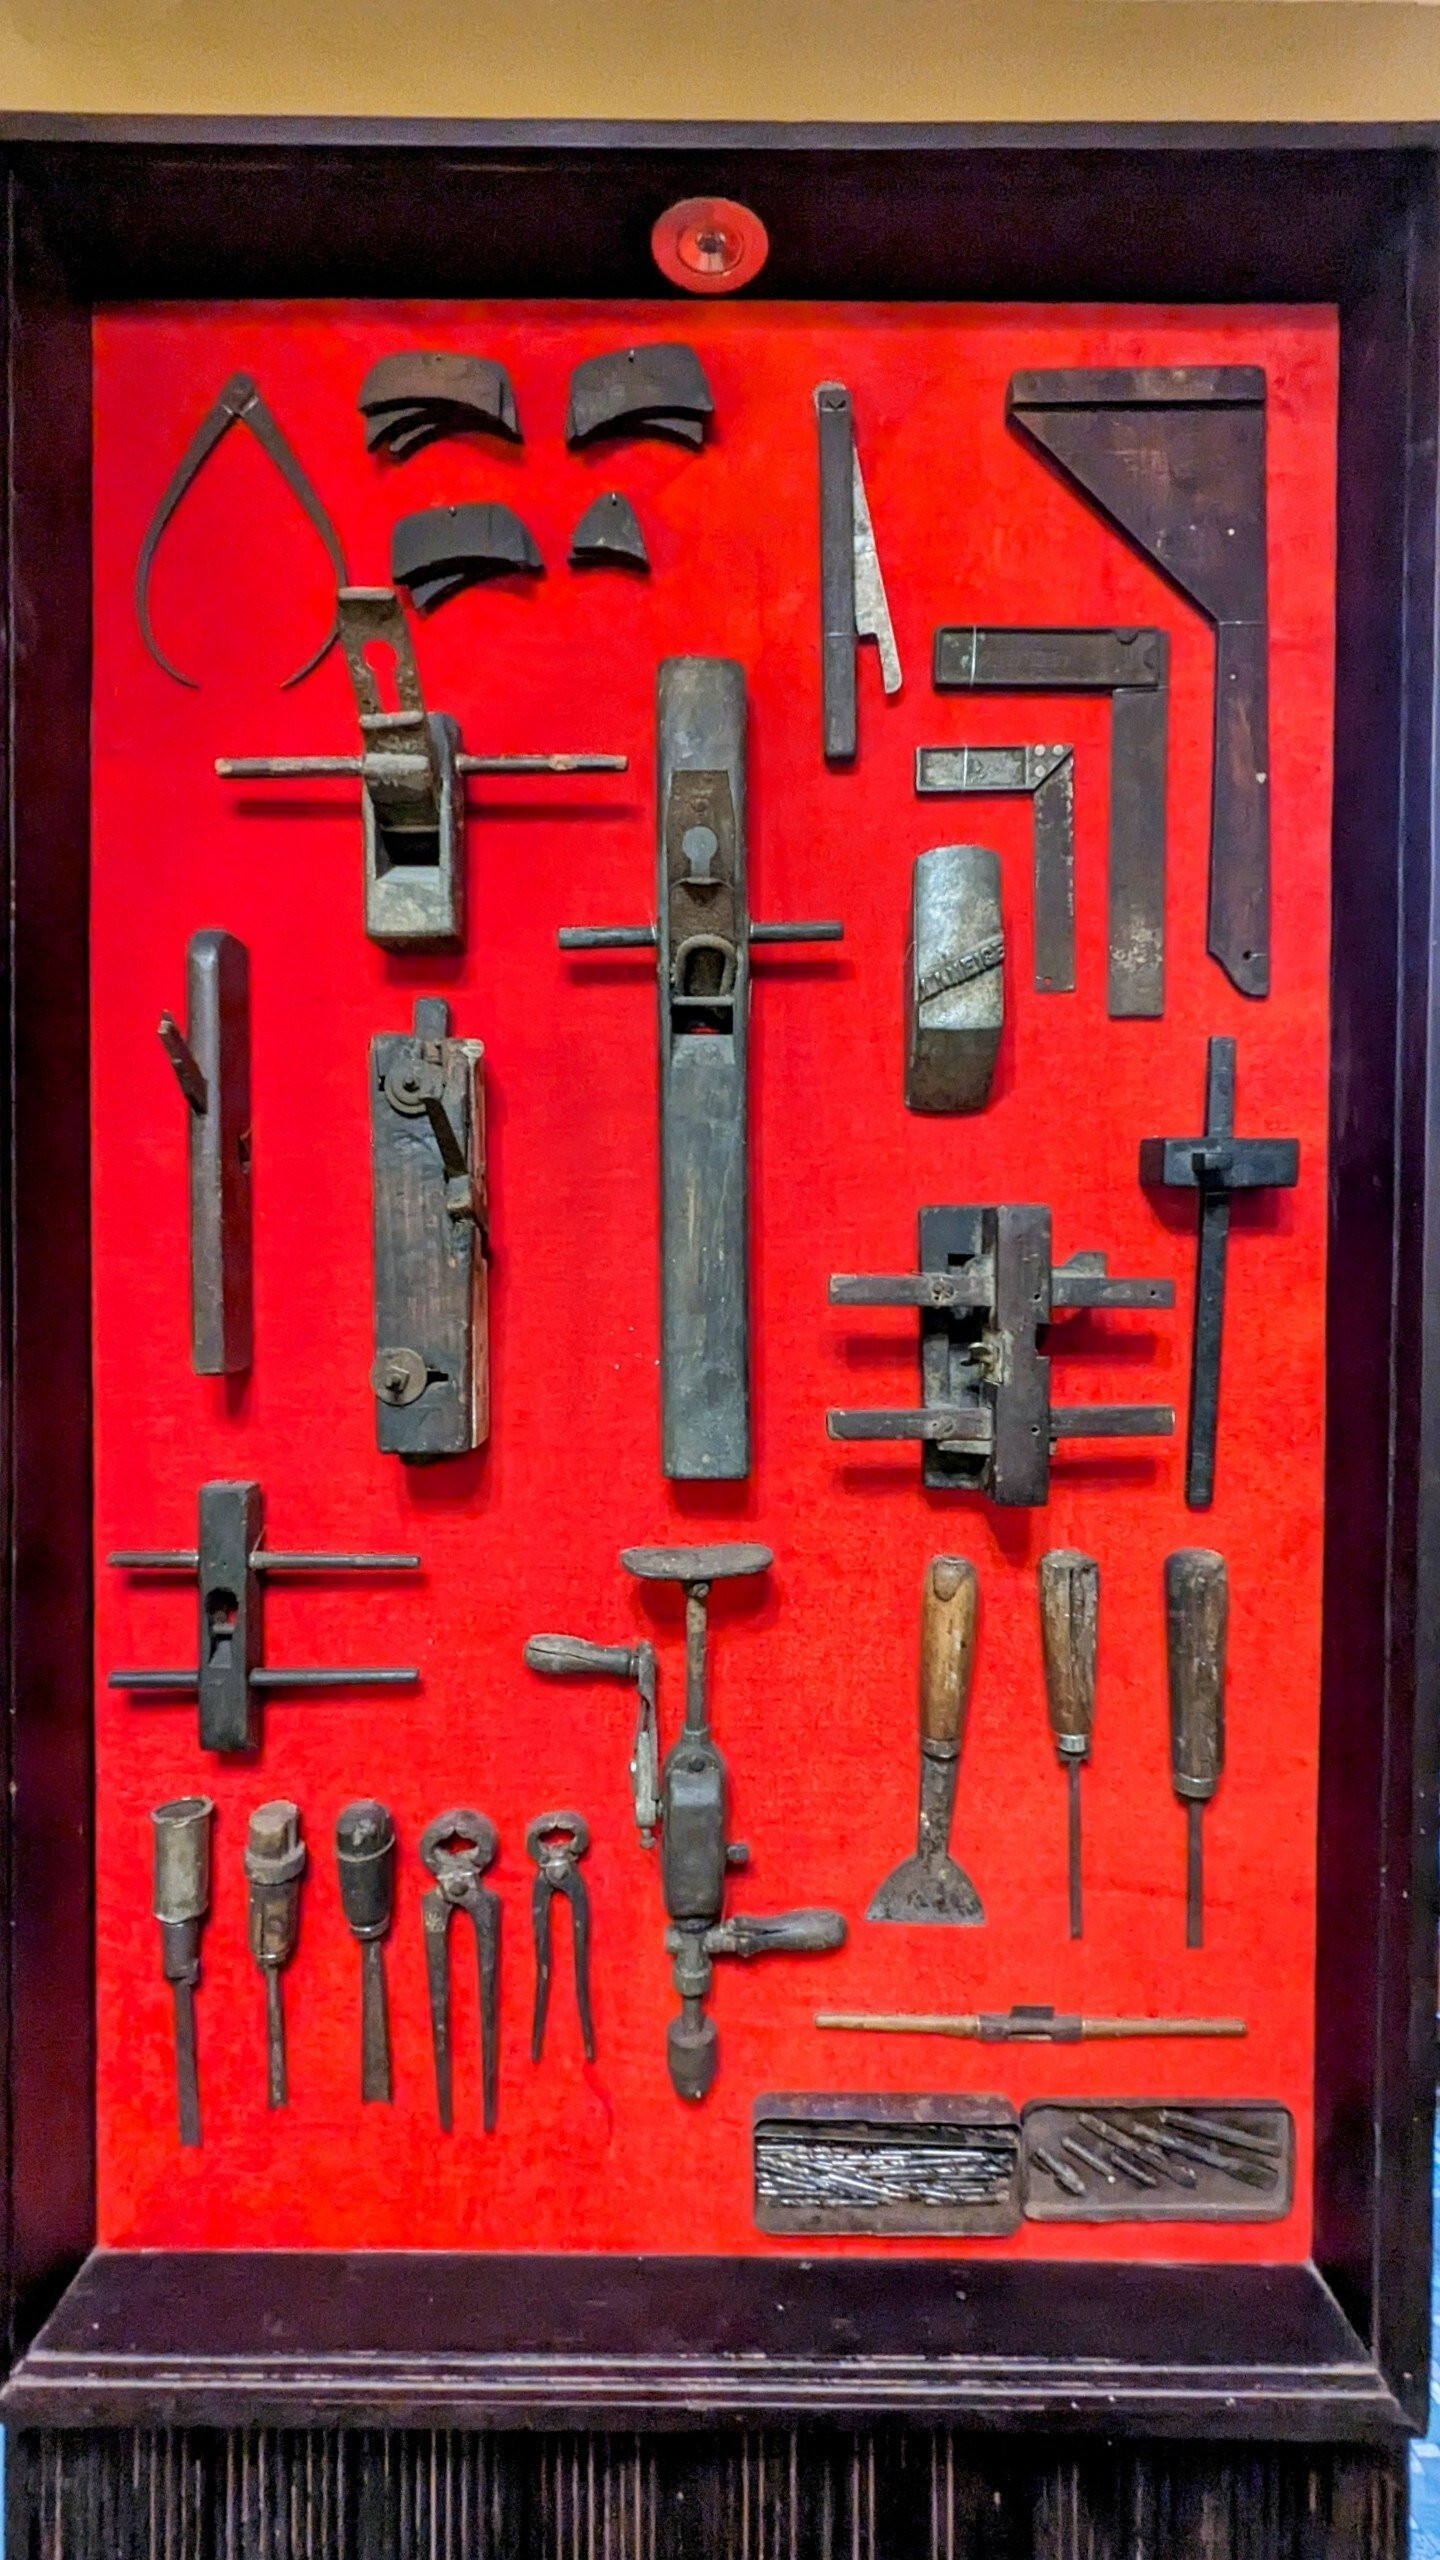 Ngắm hiện vật ở bảo tàng đầu tiên về lực lượng Biệt động Sài Gòn - Gia Định - 14